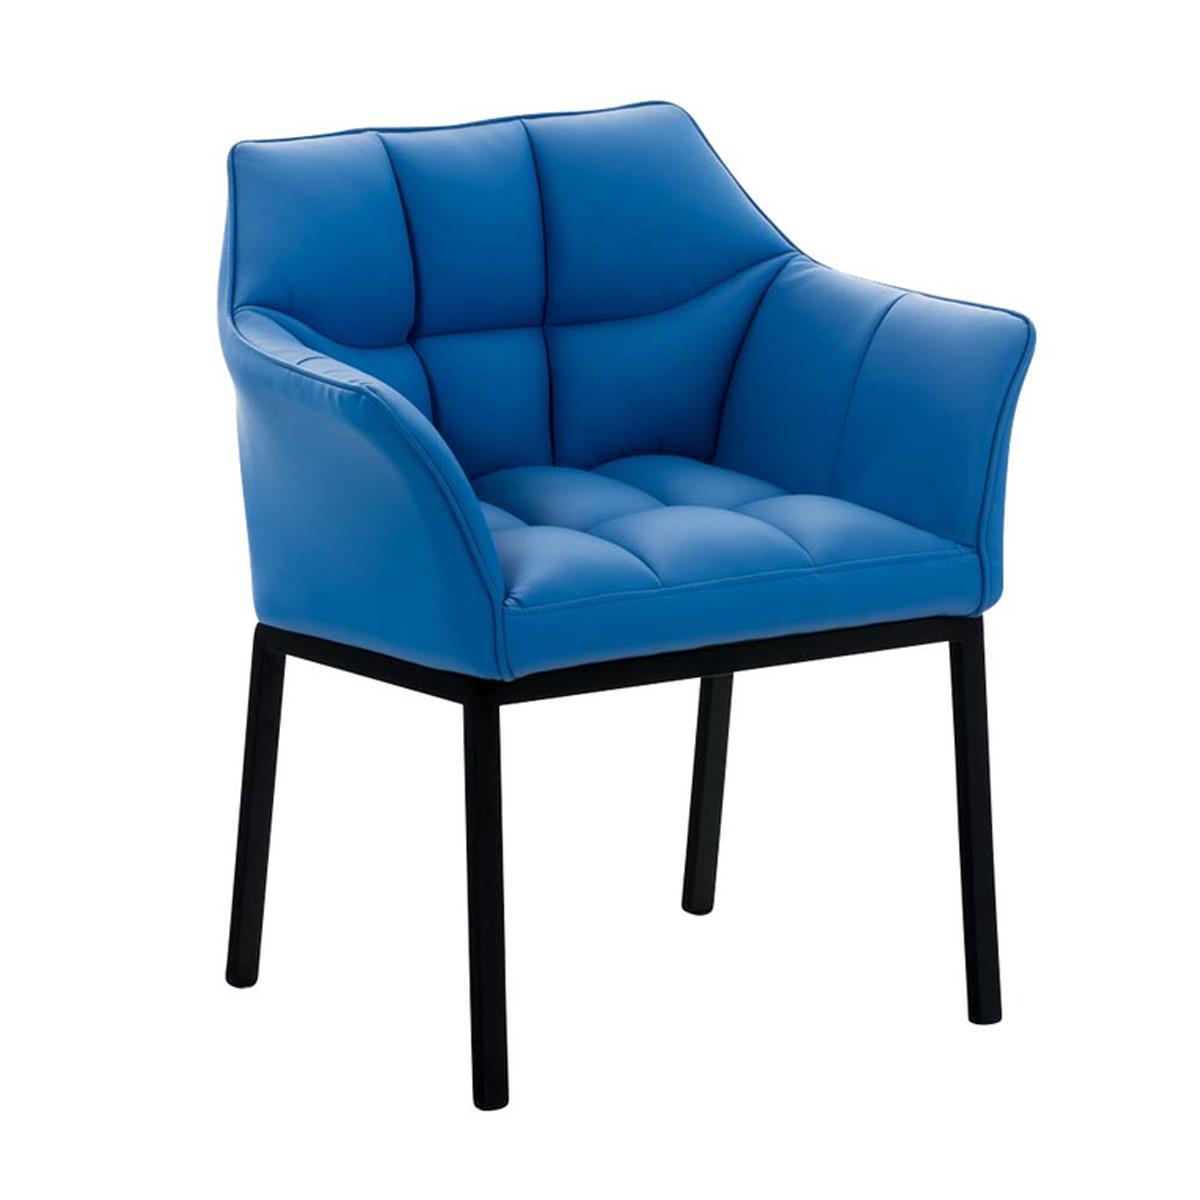 Cadeira de Visita OCTAVIO, Estructura Metálica Preta, Grande Acolchoado em Pele, Cor Azul